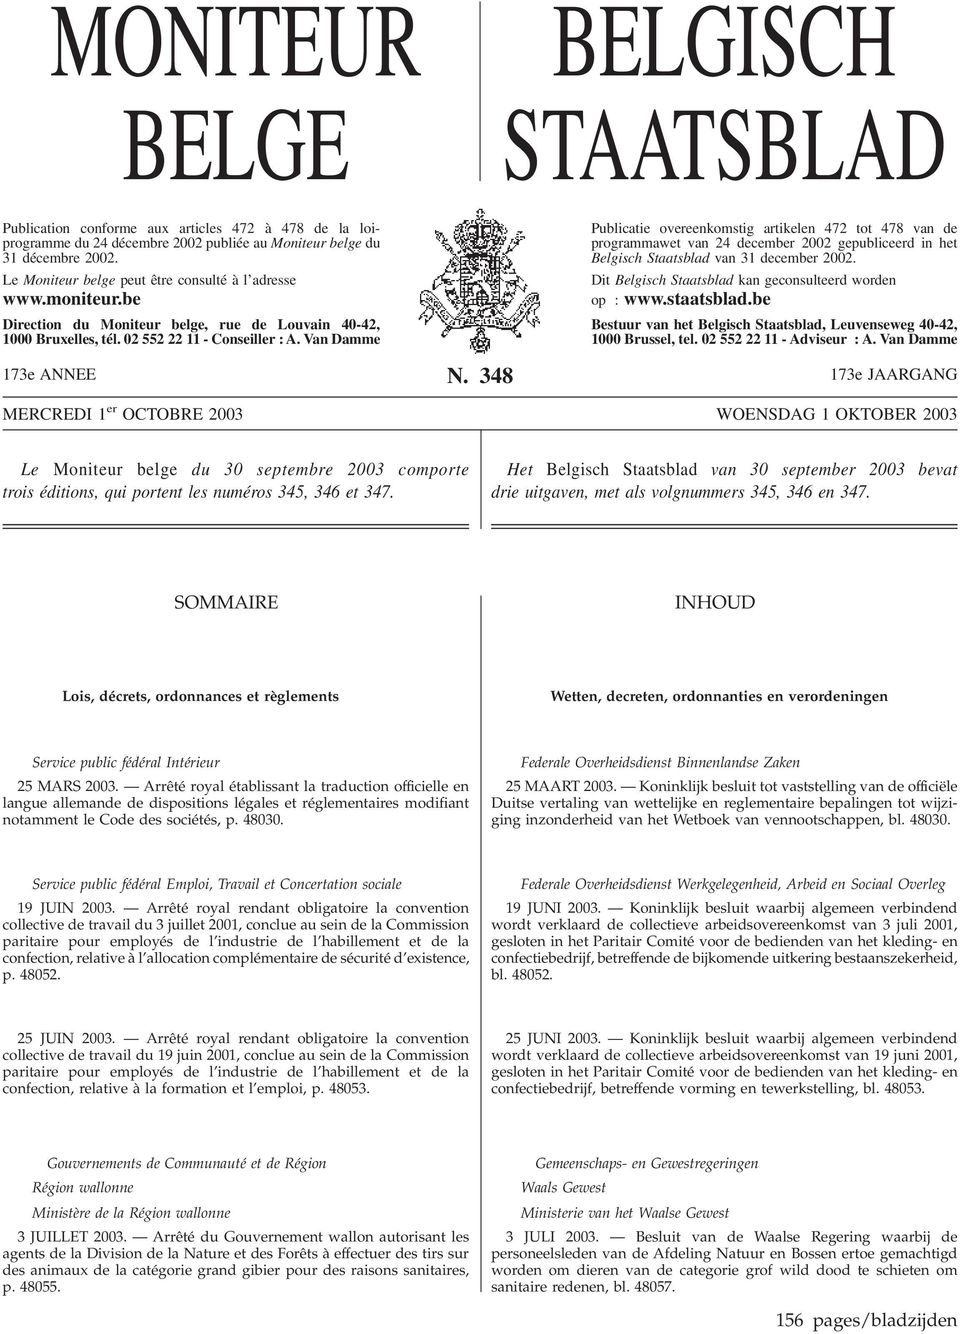 Van Damme Publicatie overeenkomstig artikelen 472 tot 478 van de programmawet van 24 december 2002 gepubliceerd in het Belgisch Staatsblad van 31 december 2002.